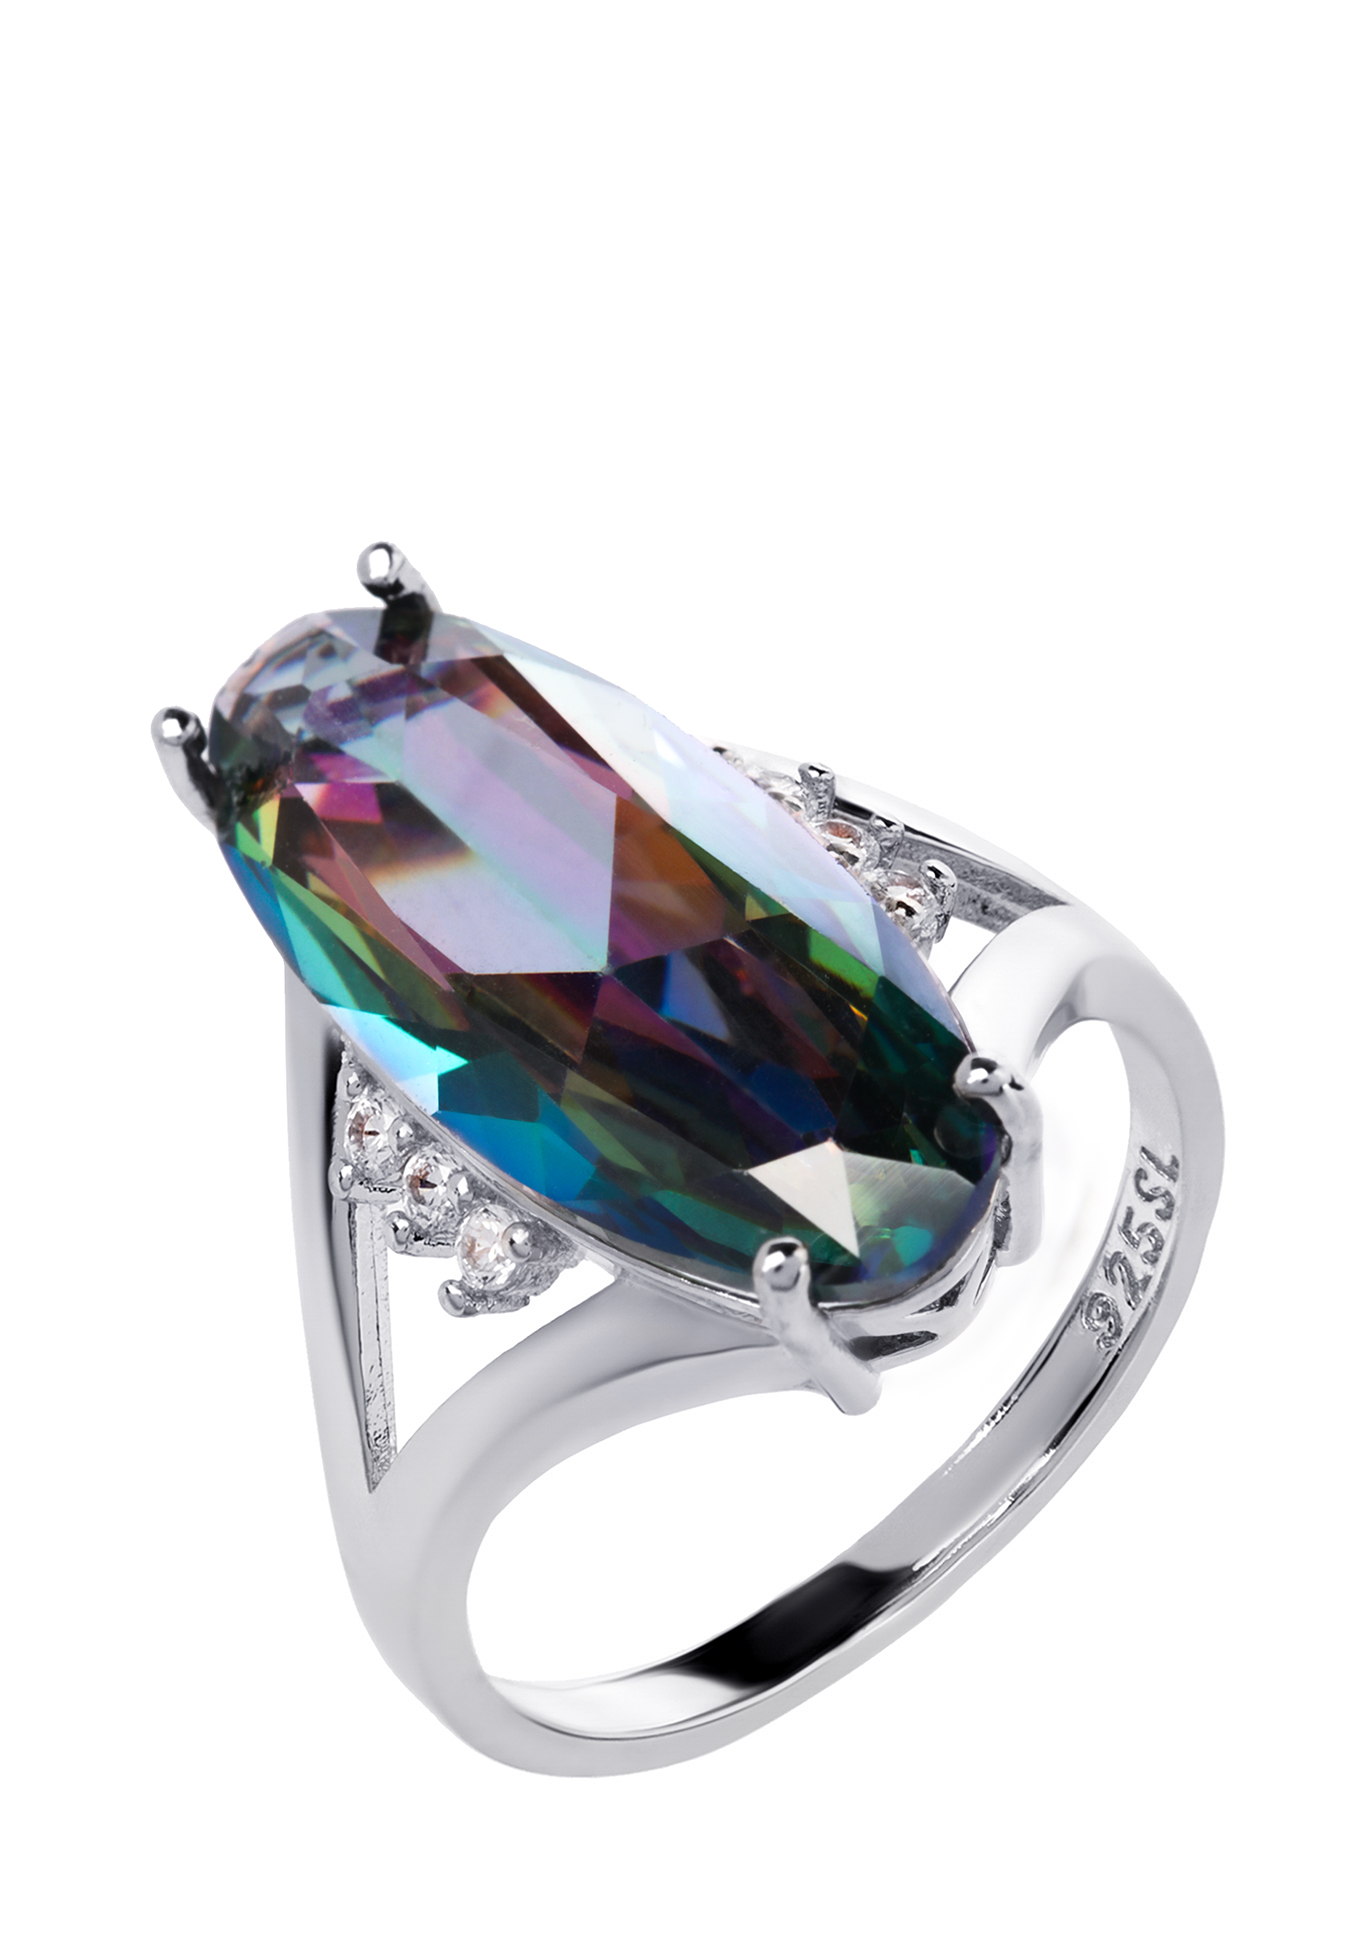 Комплект "Лианелия" Бриллианит Натюр, цвет мультиколор, размер 18 перстень, подвески - фото 3